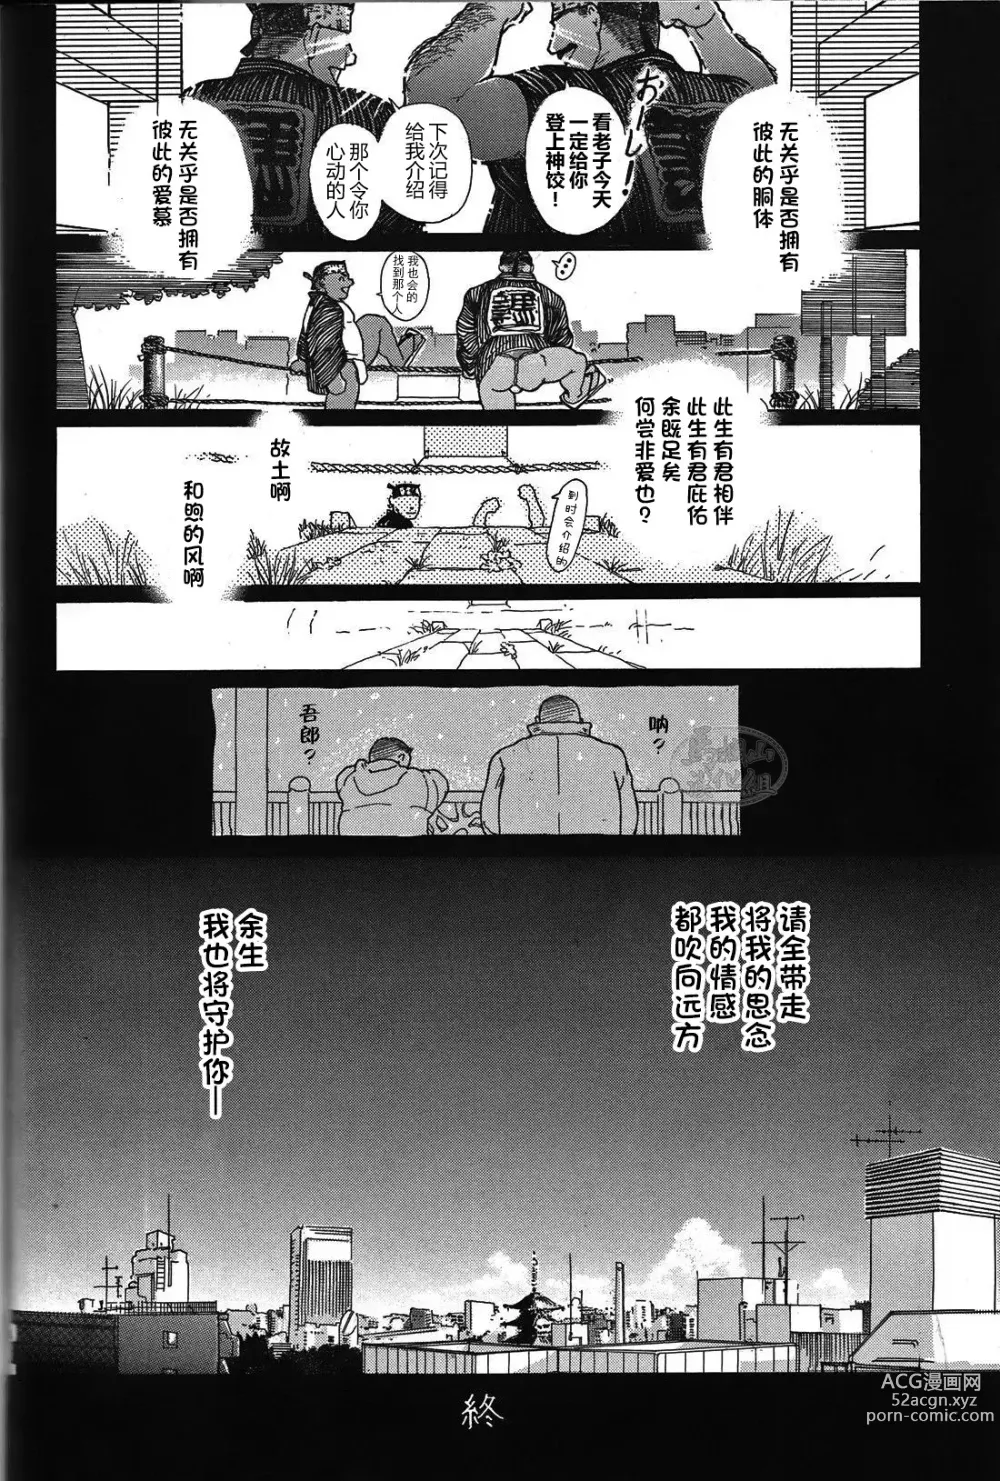 Page 47 of manga 纯情-第一章-纯情!!